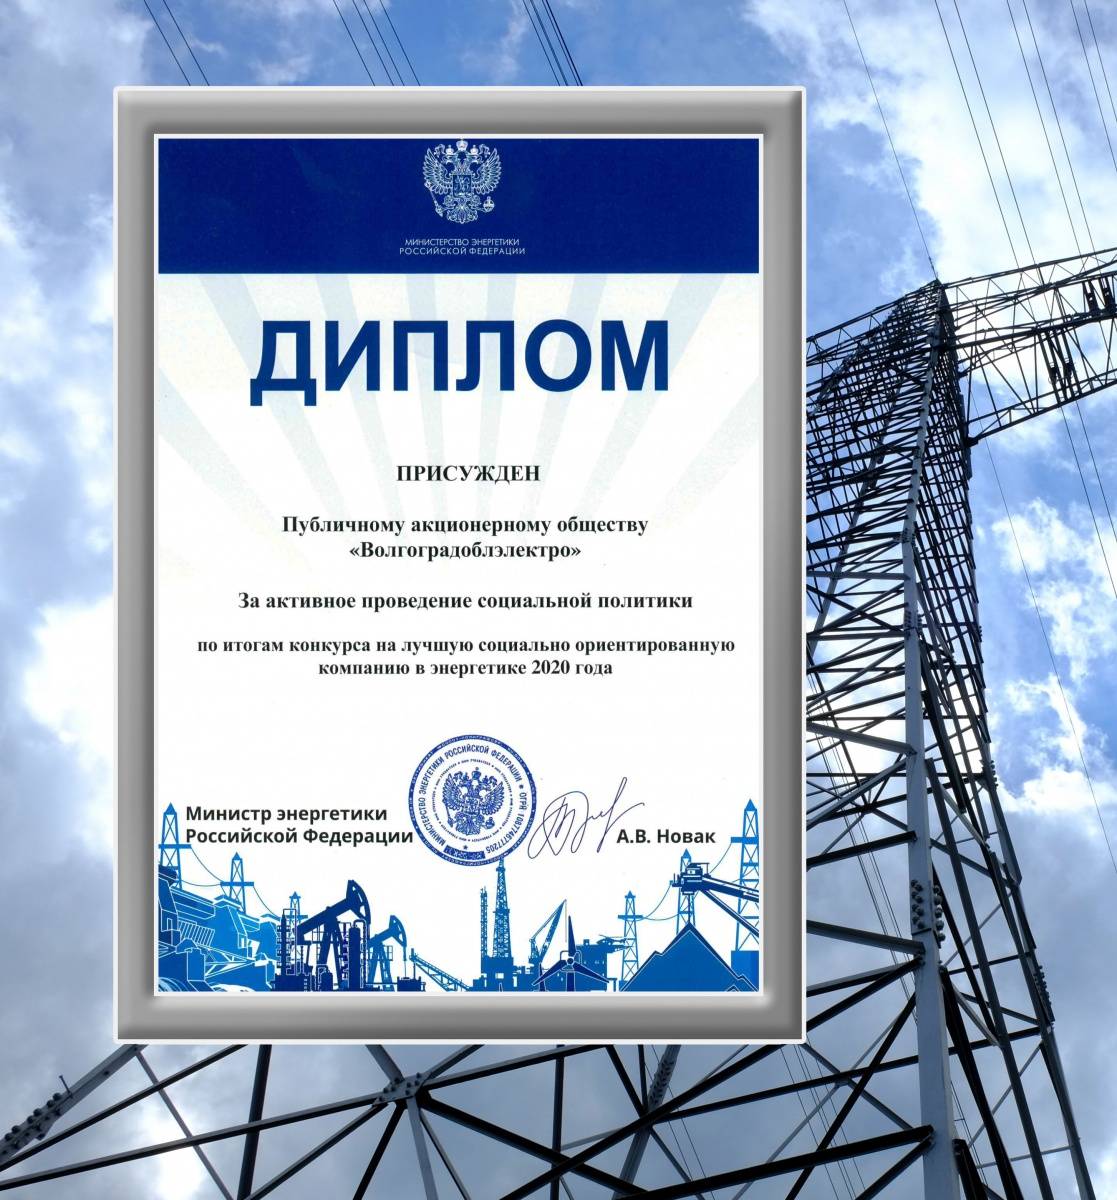 АО «Волгоградоблэлектро»  отмечено почетным дипломом Министерства энергетики Российской Федерации за активное проведение социальной политики